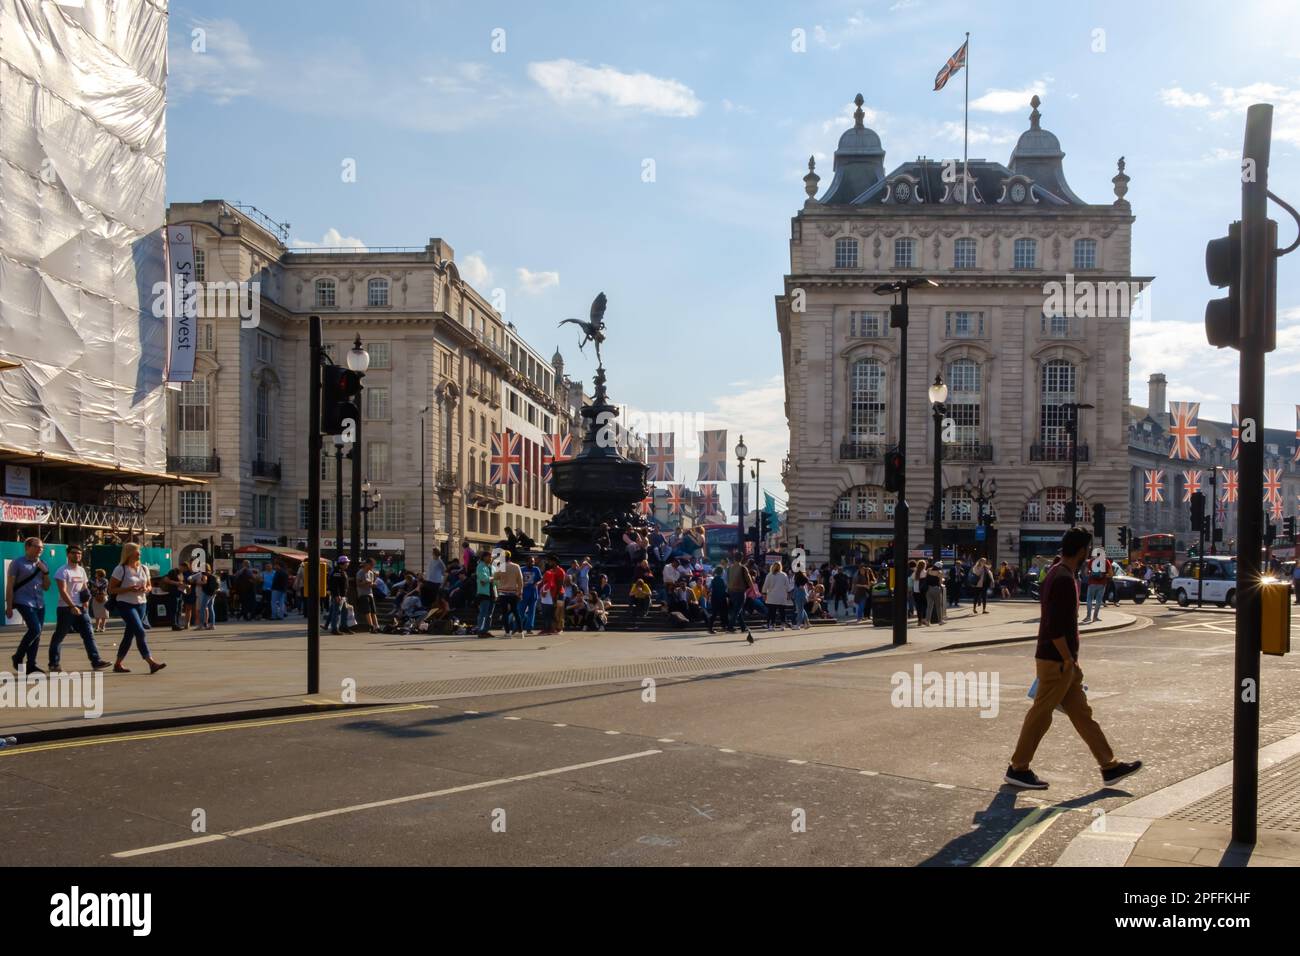 Londra, Regno Unito - 21 maggio 2018 : Vista di un Piccadilly Circus affollato a Londra UK Foto Stock